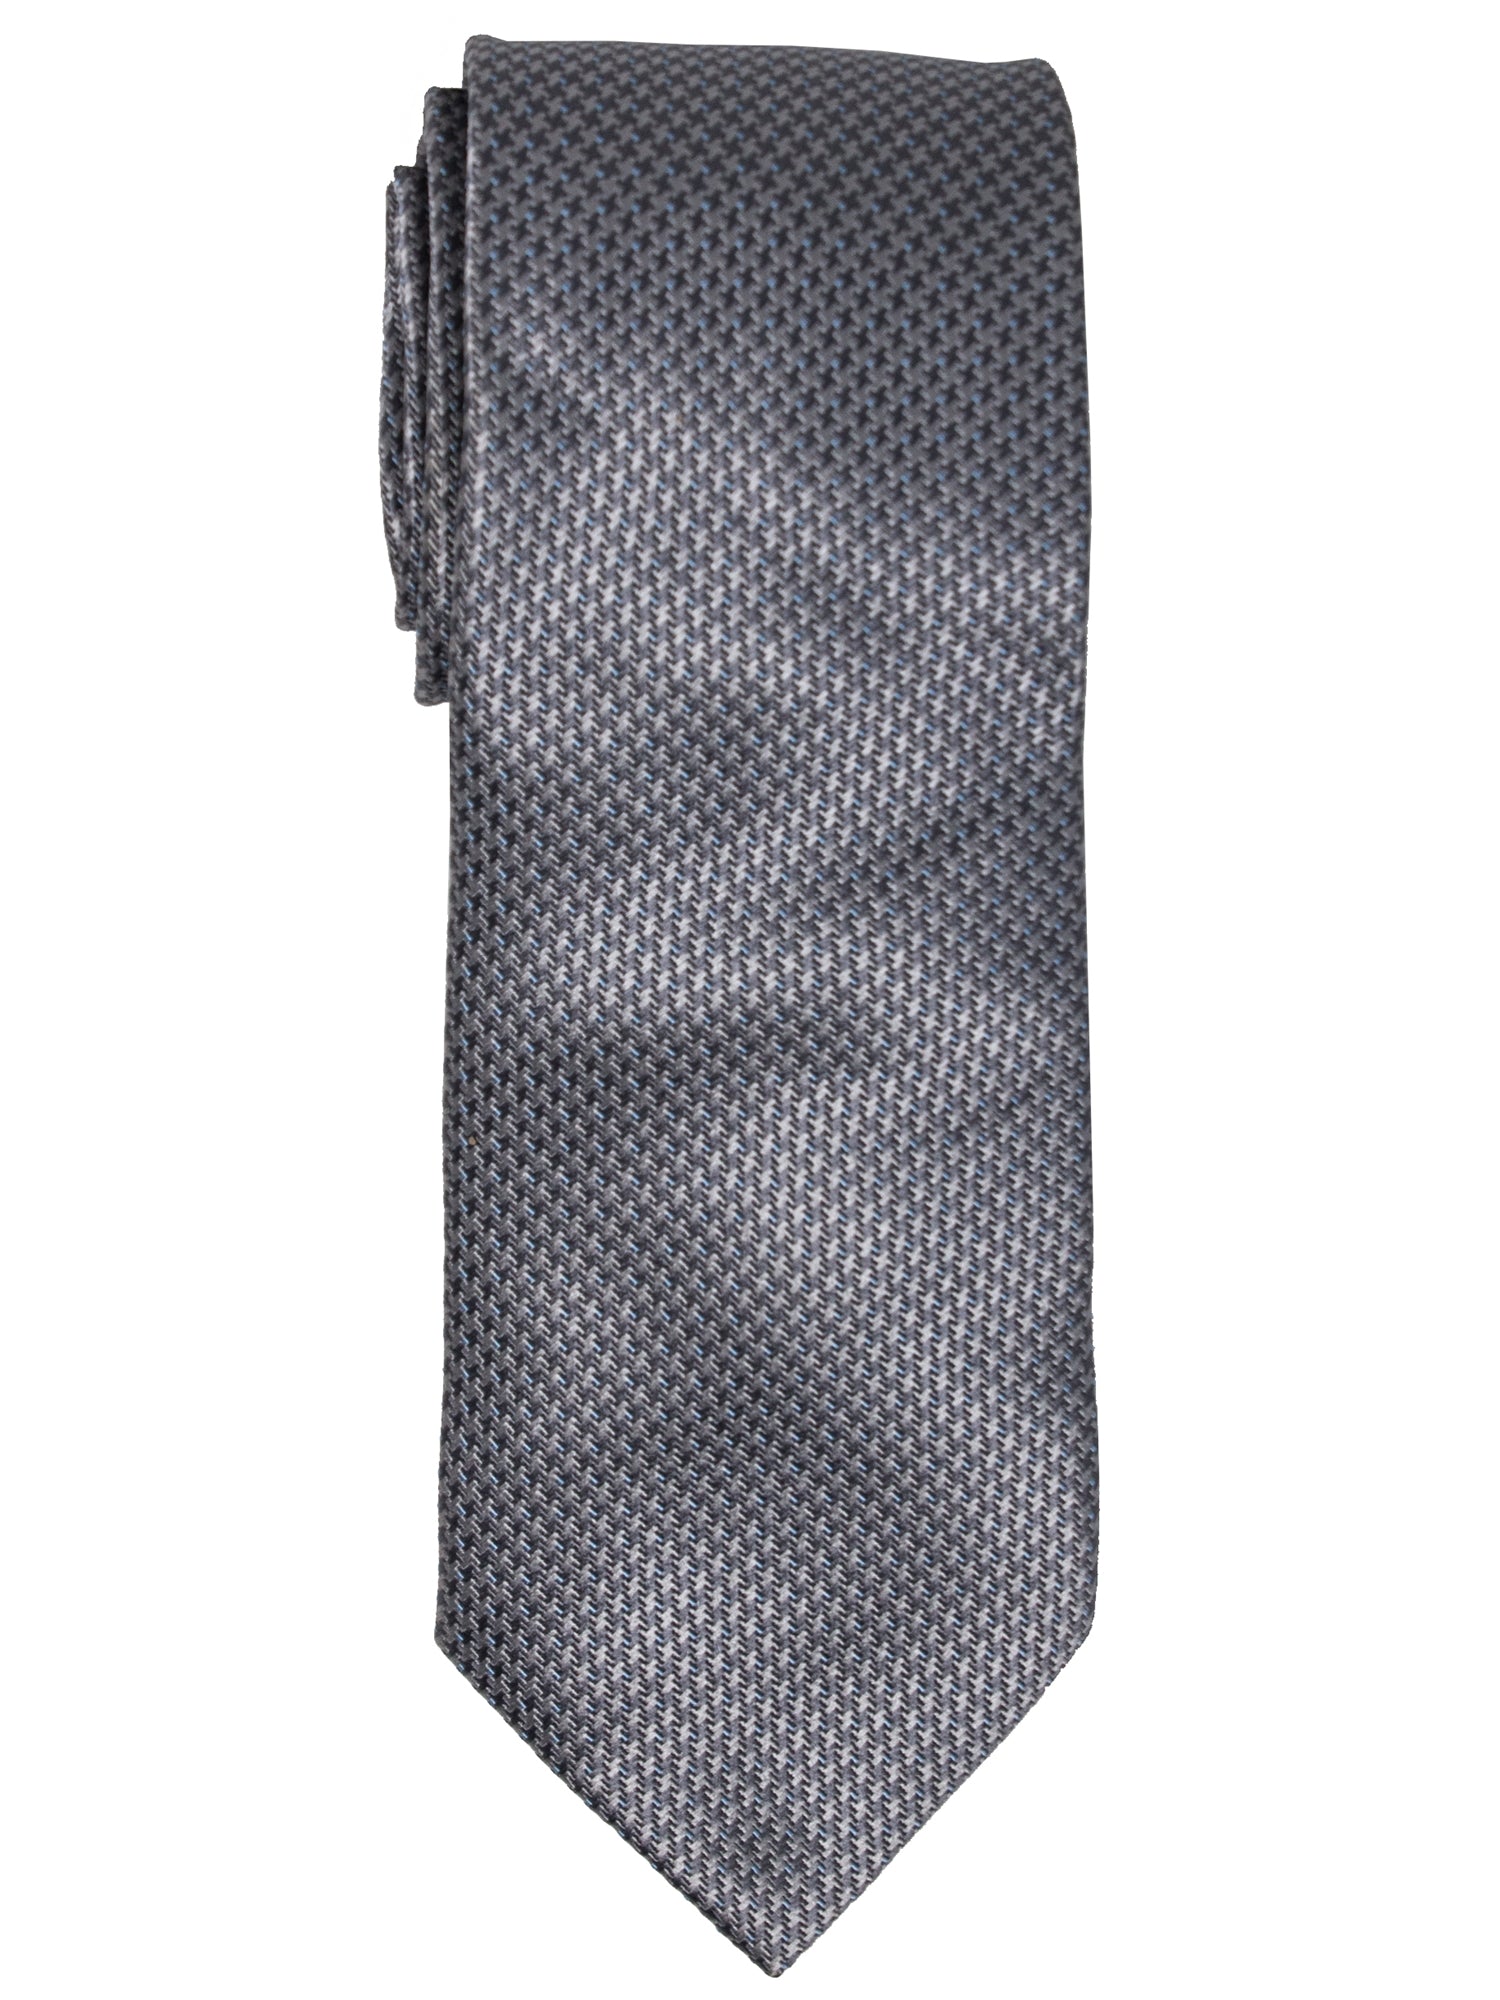 Men's Silk Woven Wedding Neck Tie Collection Neck Tie TheDapperTie Grey Geometric Regular 